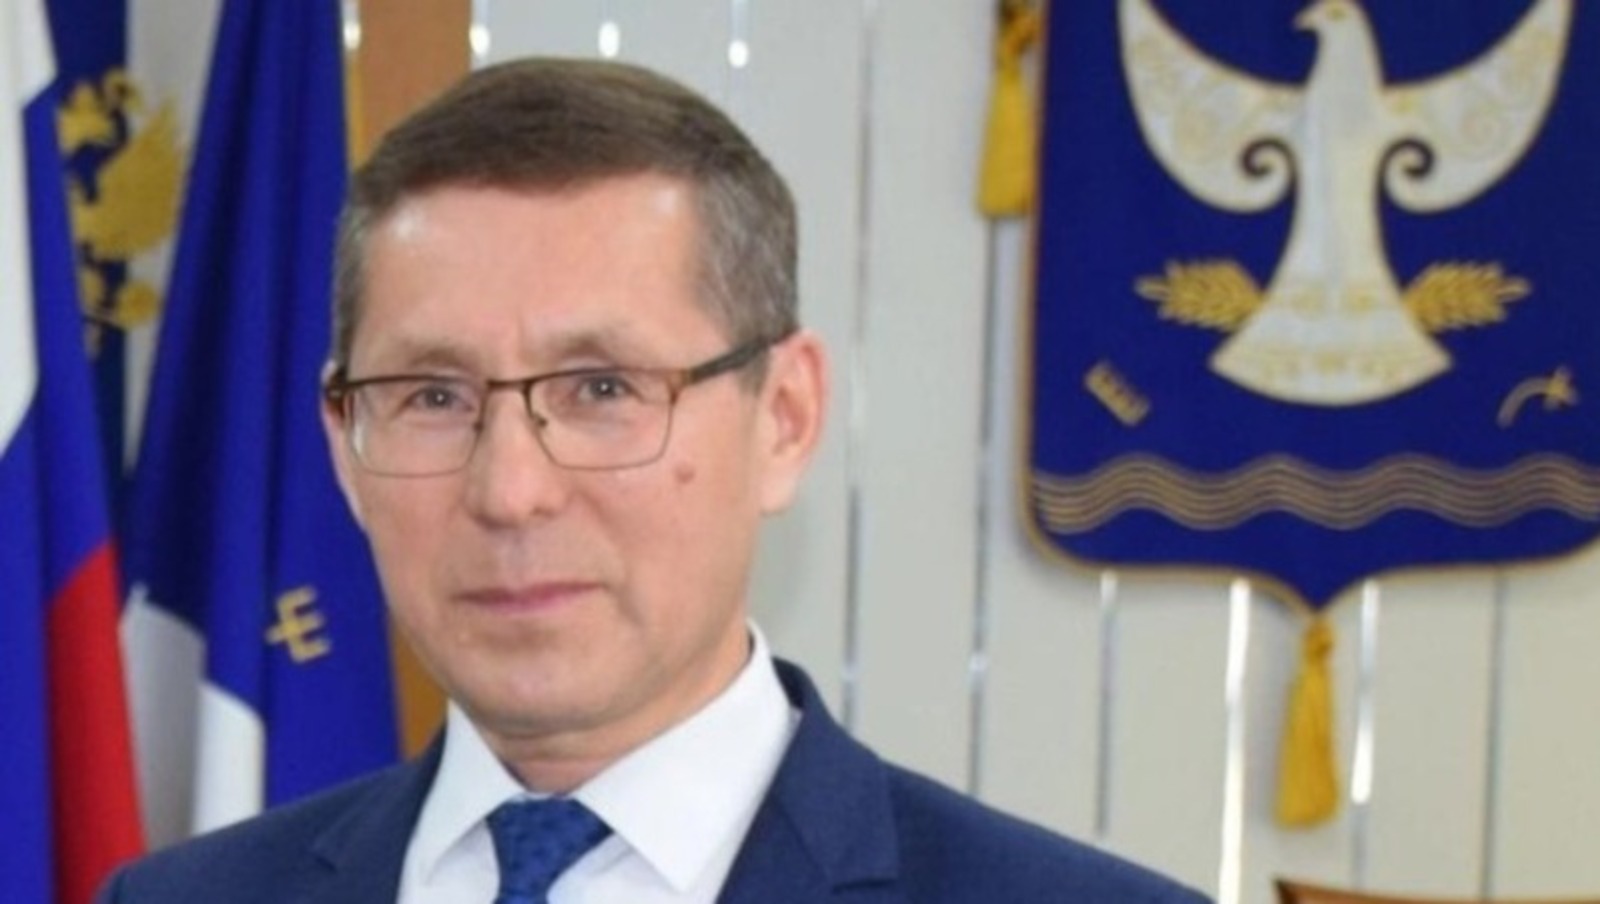 Глава района в Башкирии уходит в отставку